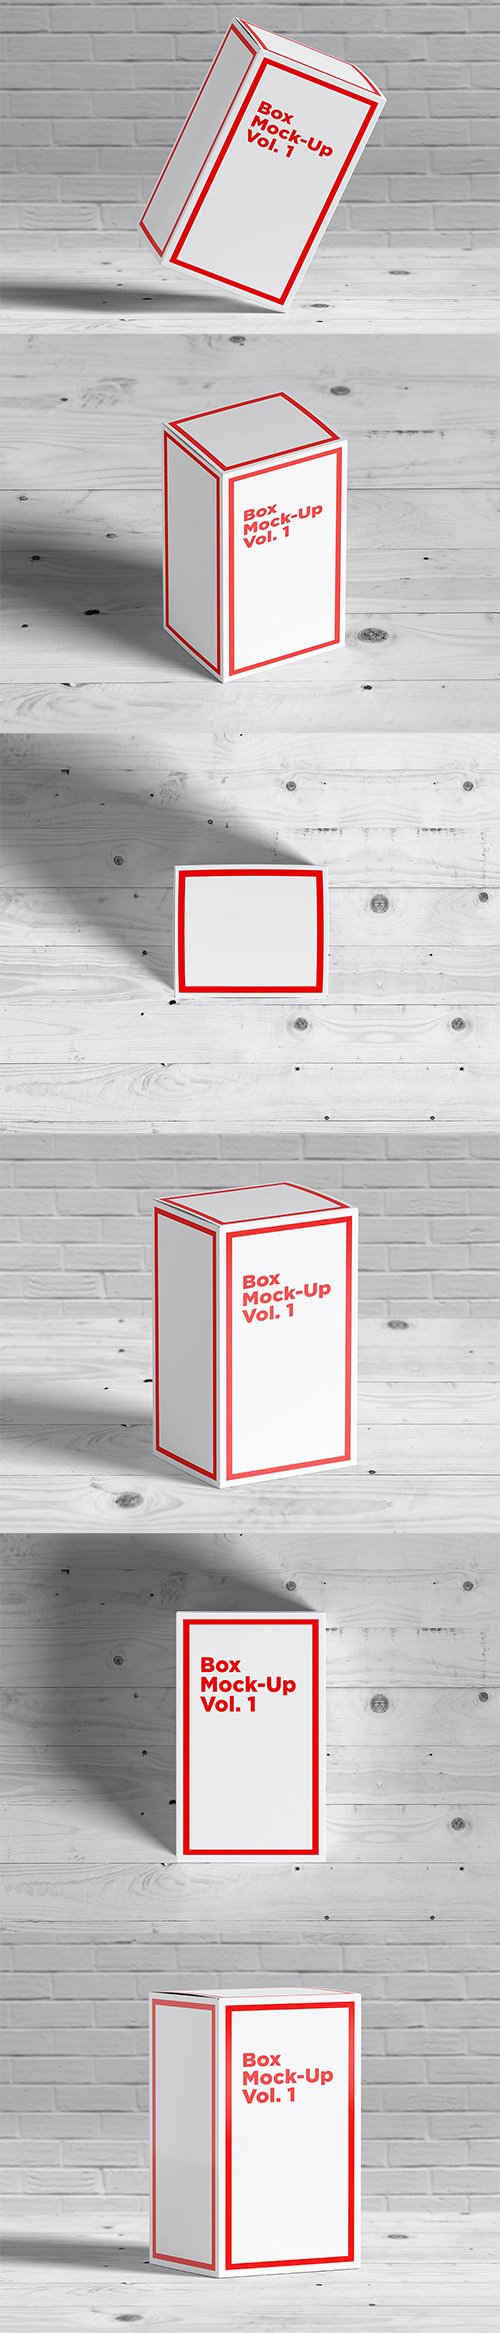 Box Mock-Ups vol. 1